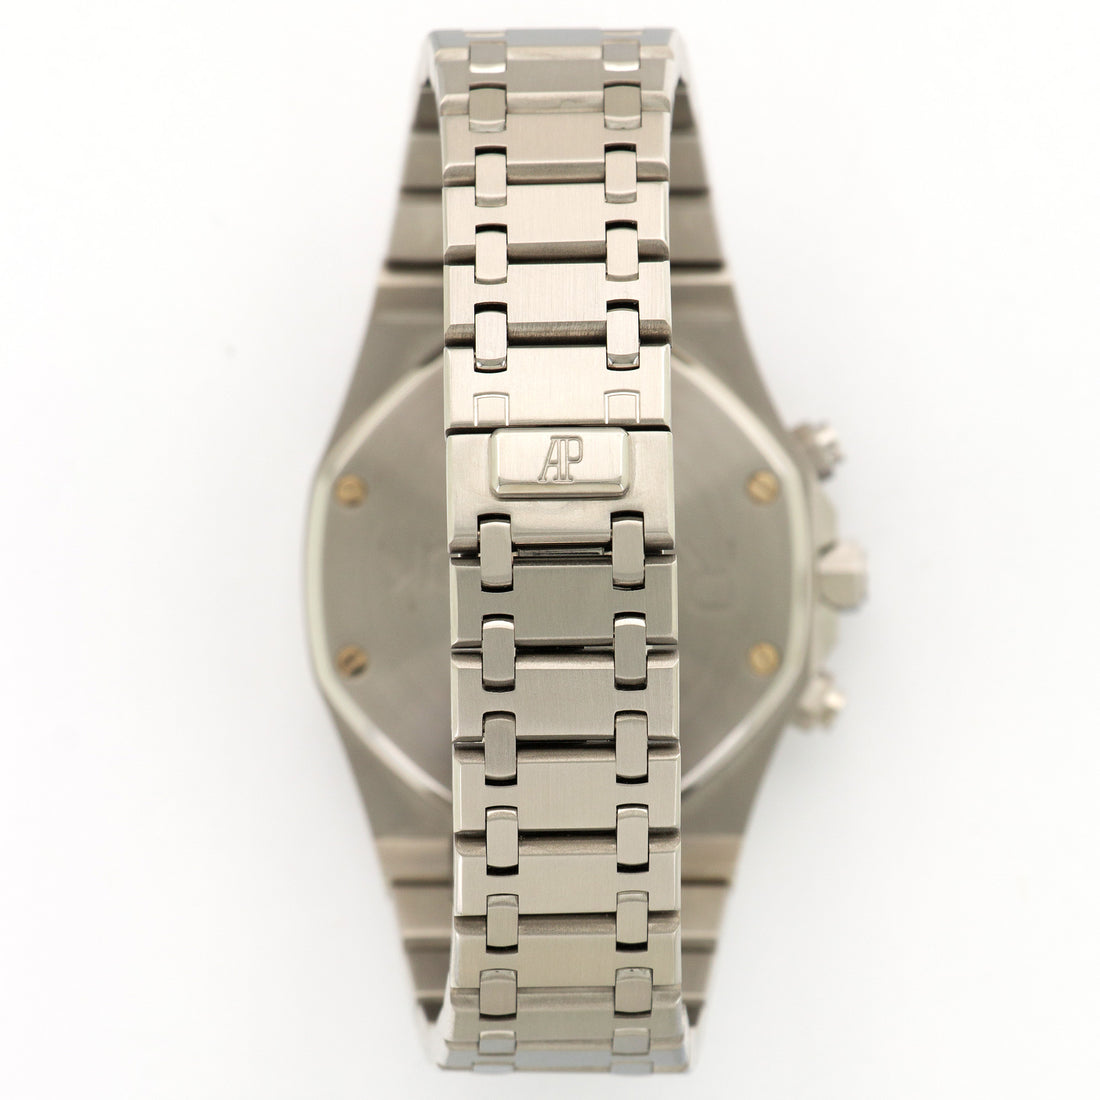 Audemars Piguet Royal Oak Chronograph Watch Ref. 25860